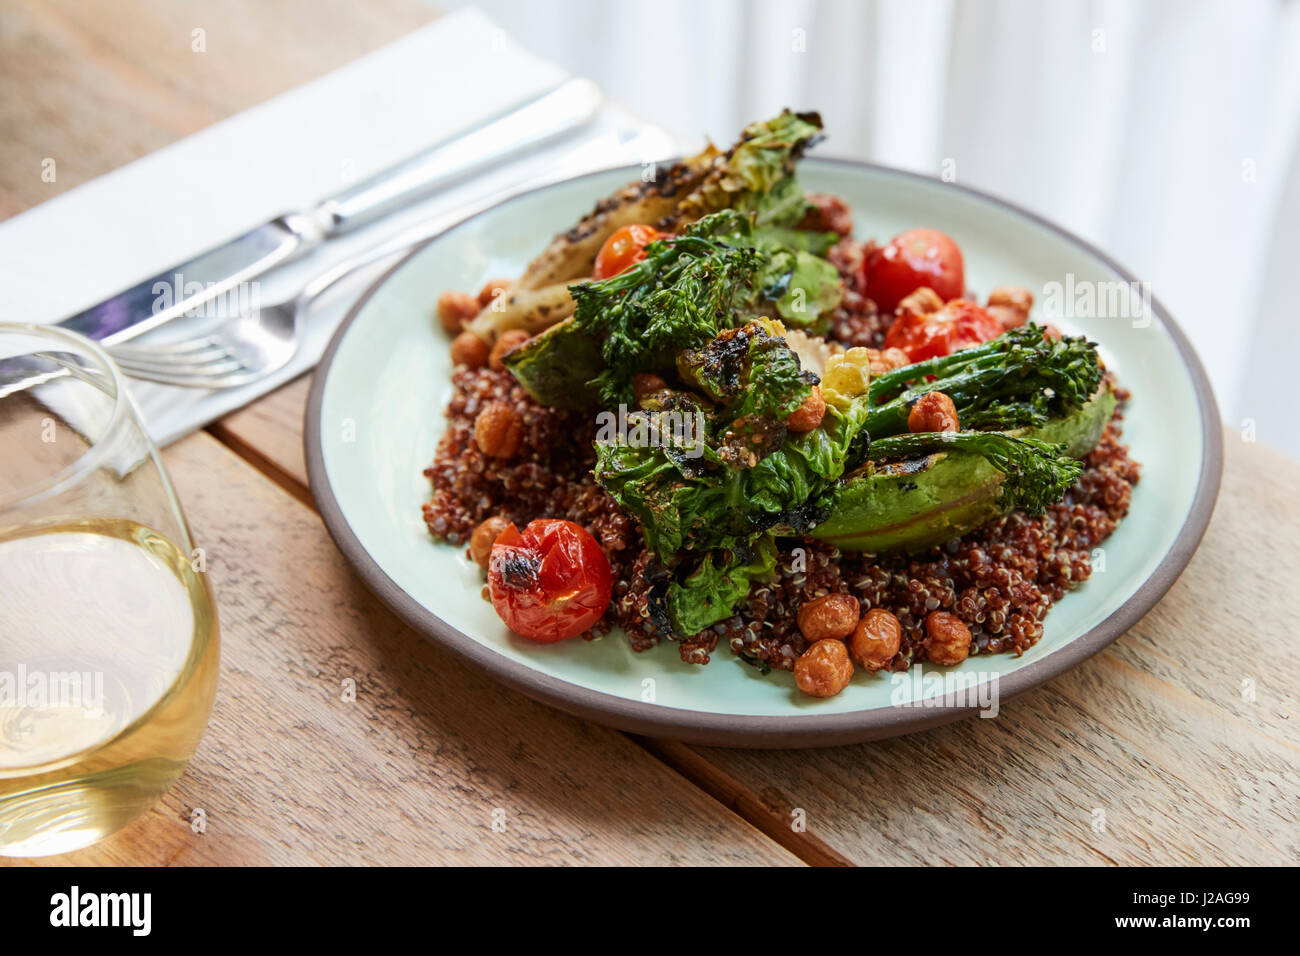 Avocado, broccolini, chickpea, quinoa salad, elevated view Stock Photo